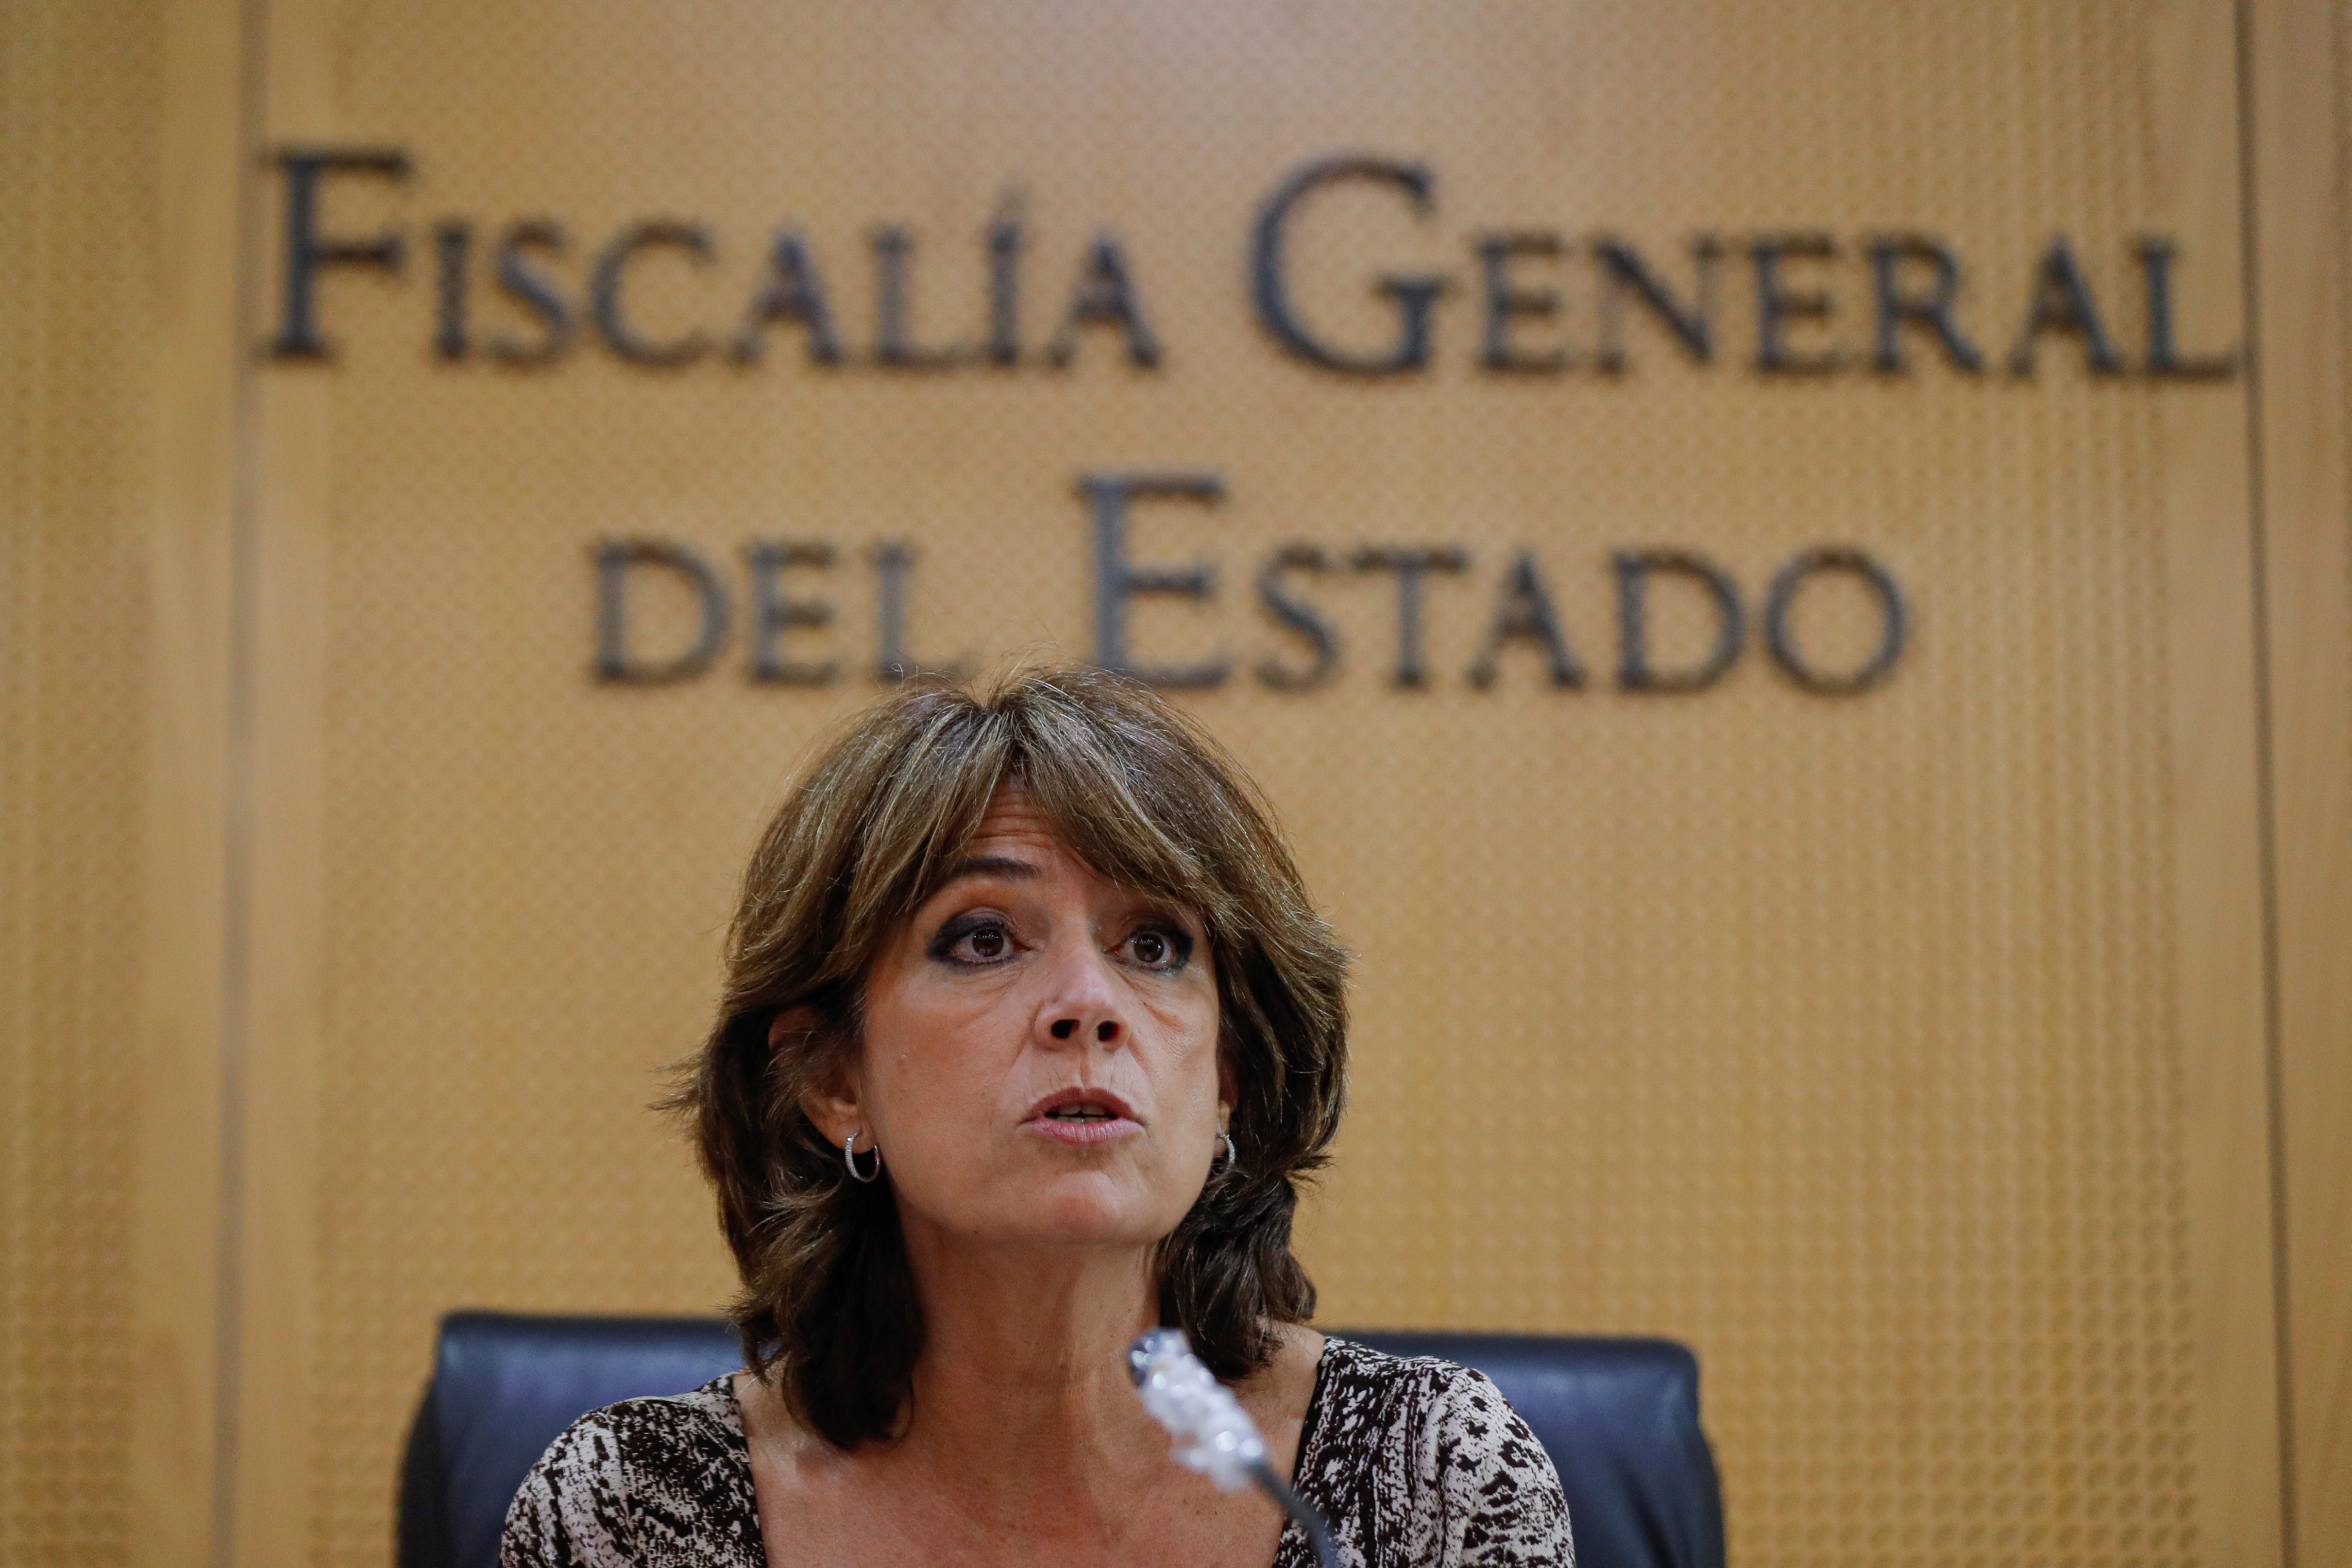 La fiscal general en España, Dolores Delgado deja el puesto tras un mandato polémico